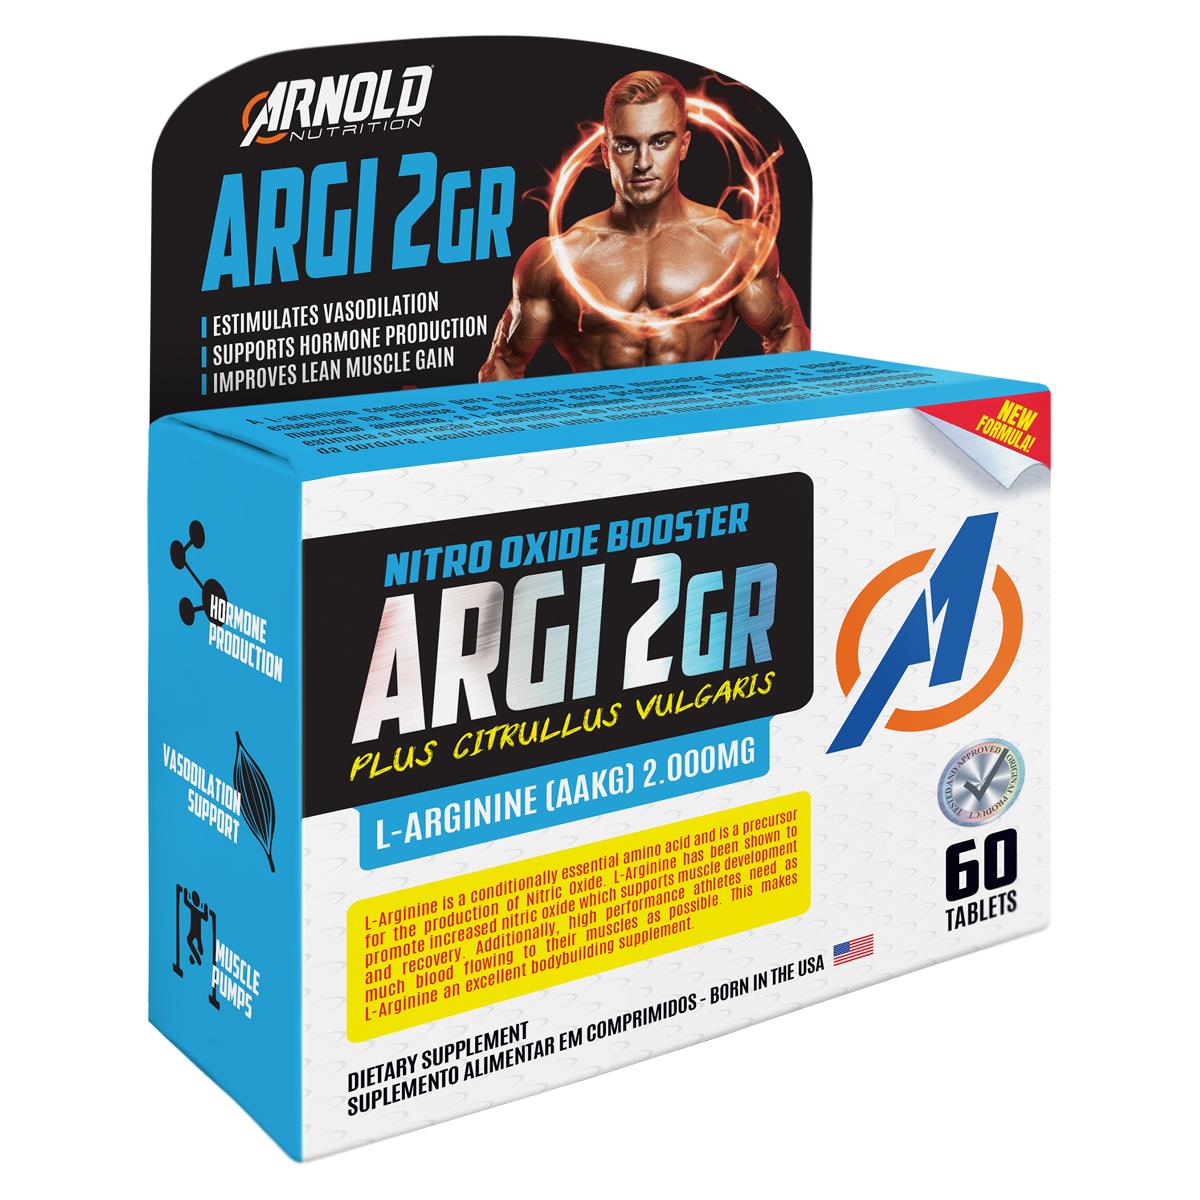 Argi 2GR L-Arginine (AAKG) Arnold Nutrition 60 Tabletes44, - Foto 0